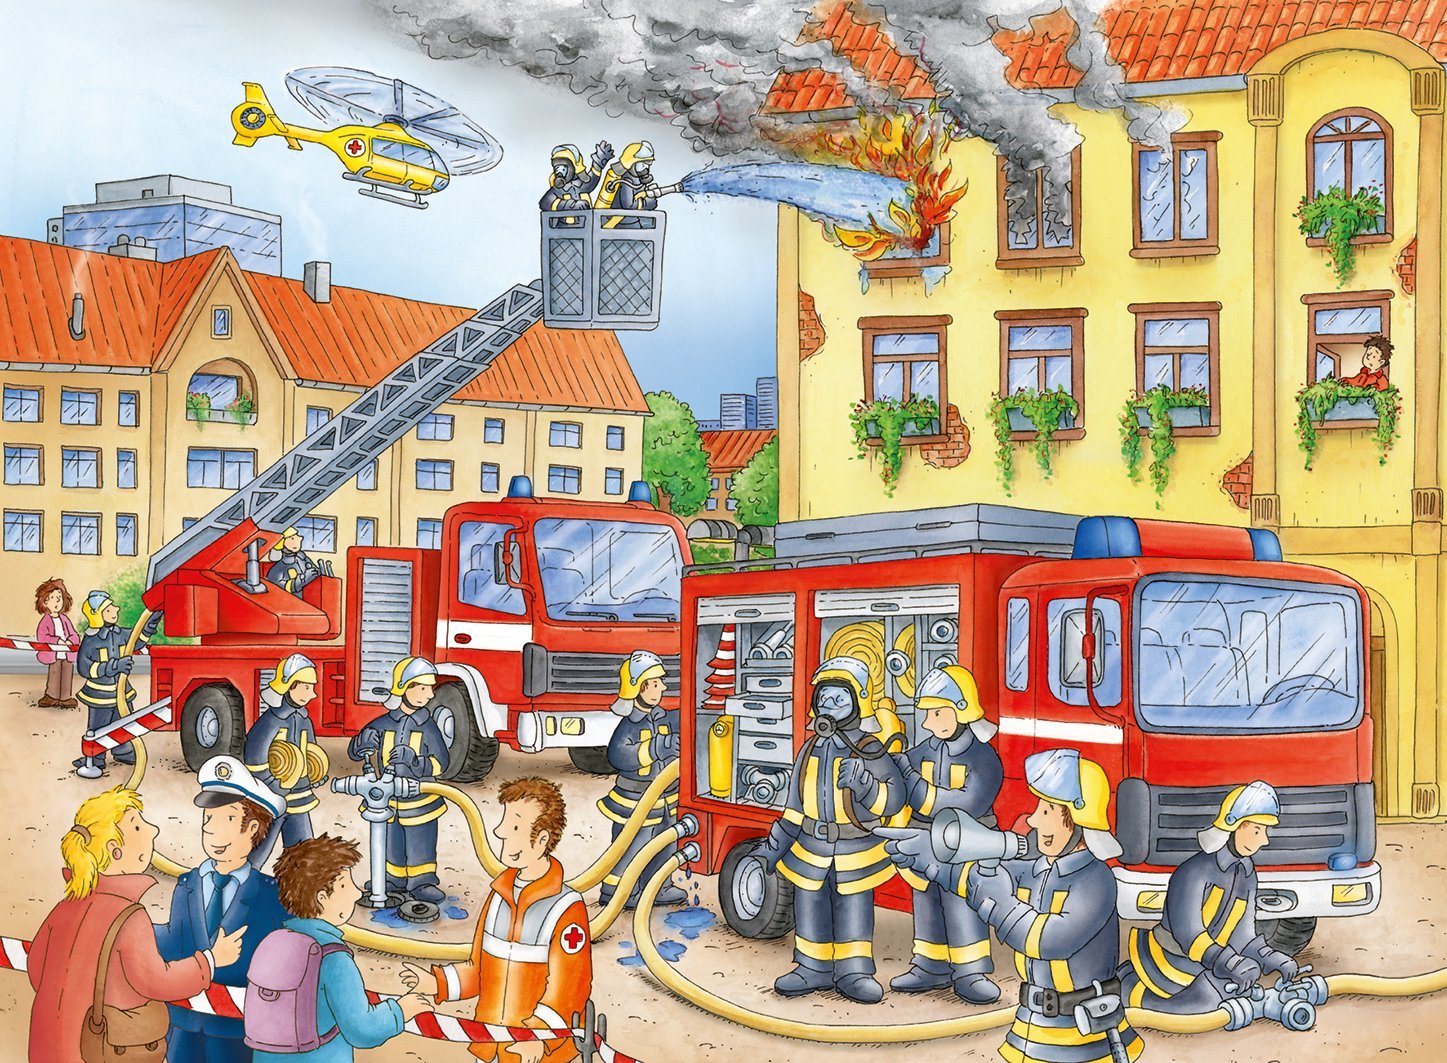 Пазл пожарный. Пазл Ravensburger на пожаре. Пожарная тематика для детей. Пазлы профессии для детей пожарный. Пожар иллюстрация для детей.